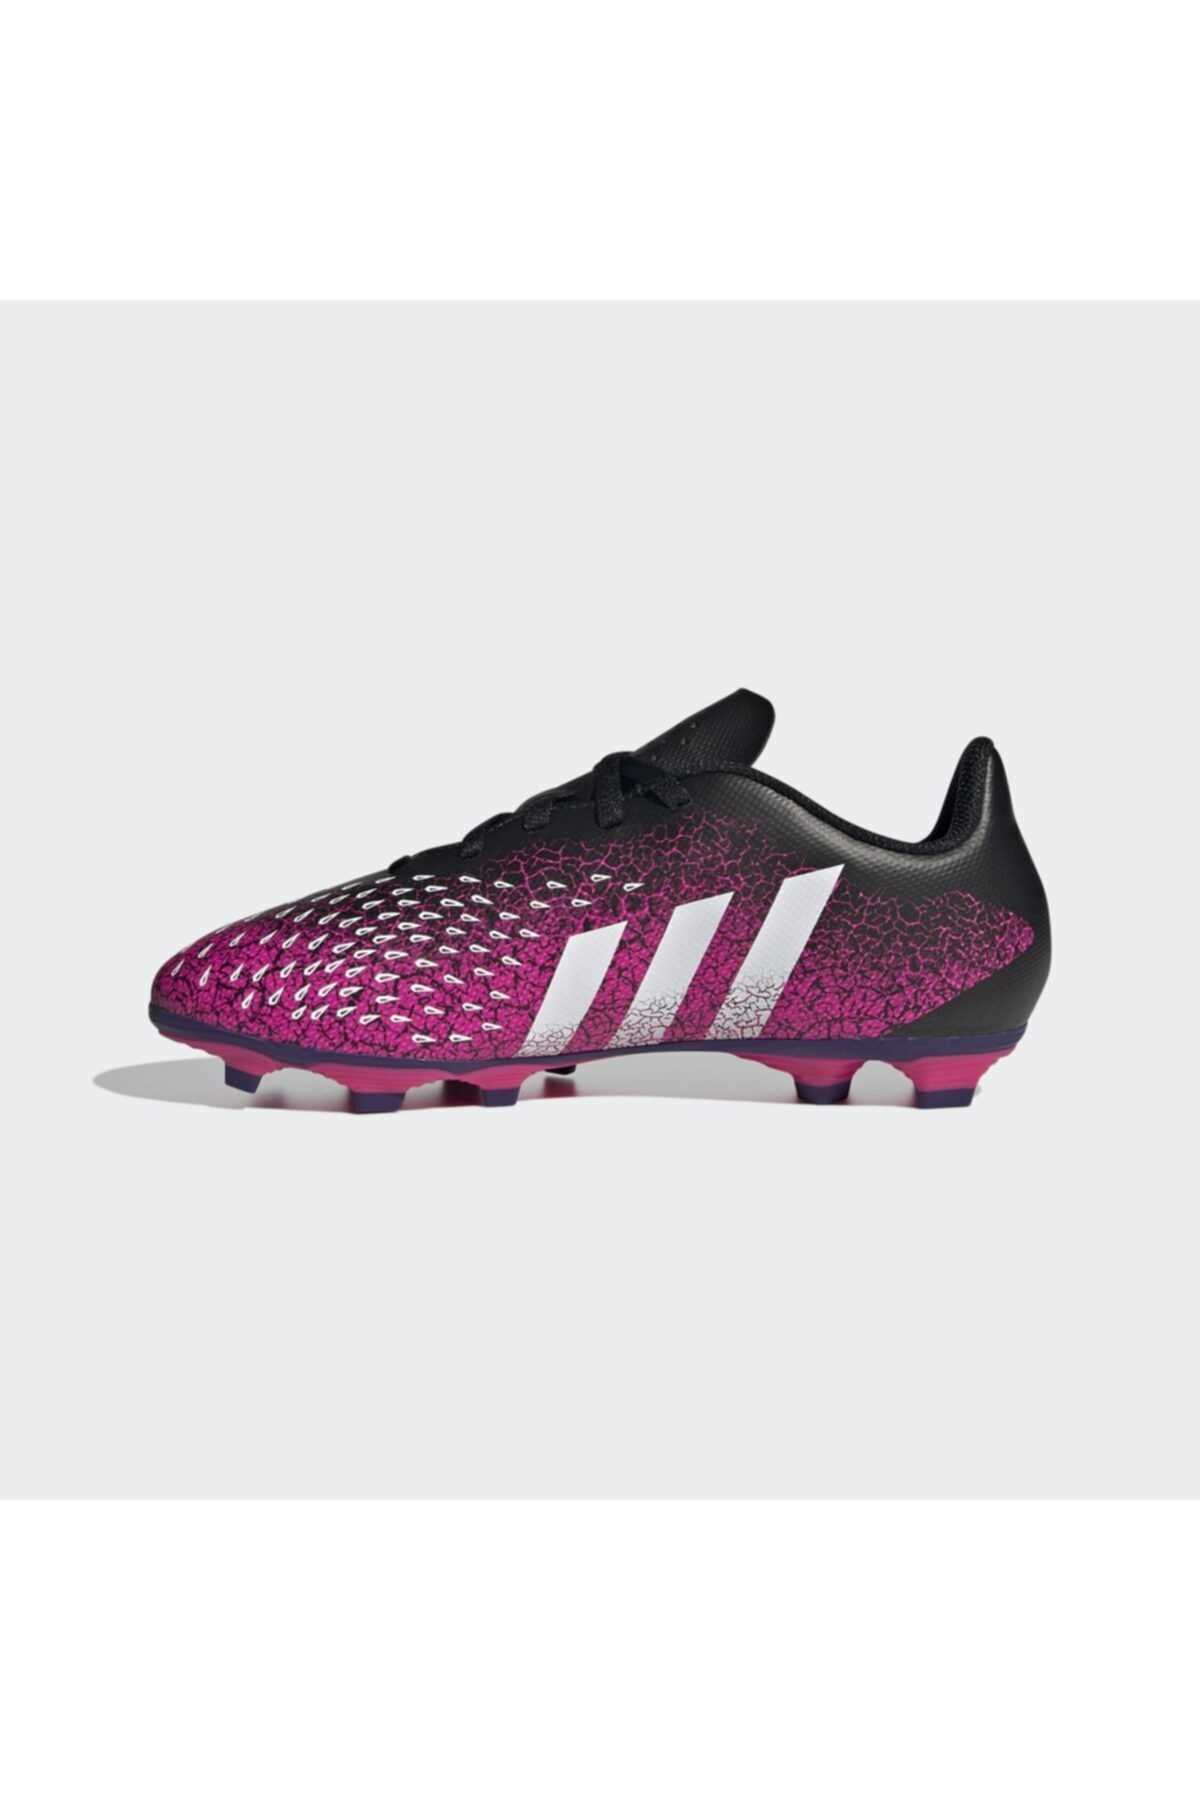 خرید اینترنتی کفش فوتبال دخترانه شیک برند adidas کد ty100893930